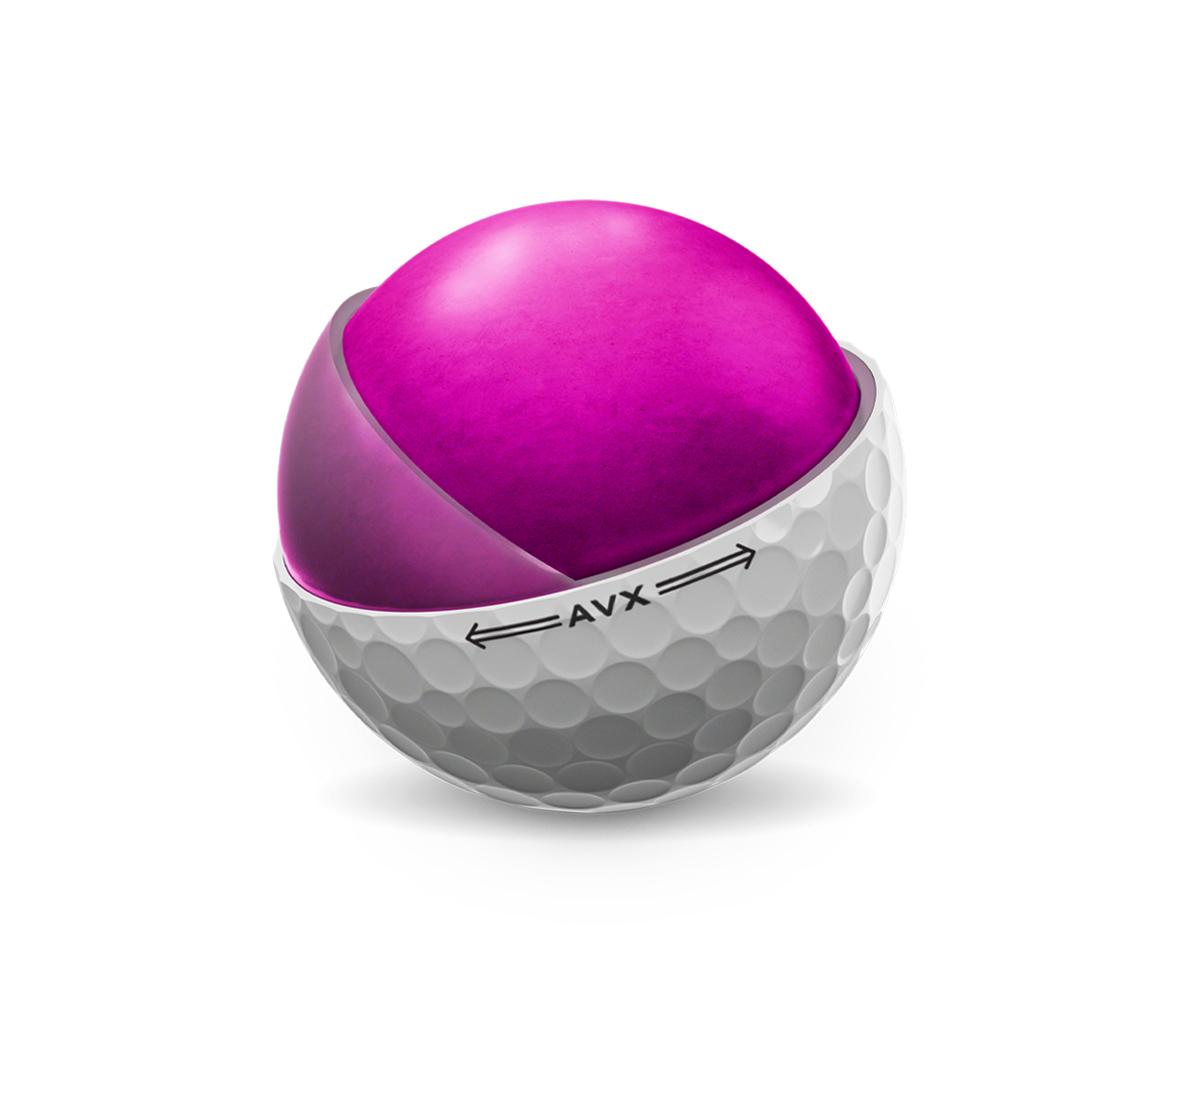 Titleist AVX | Buy AVX Golf Balls | Titleist Golf Balls